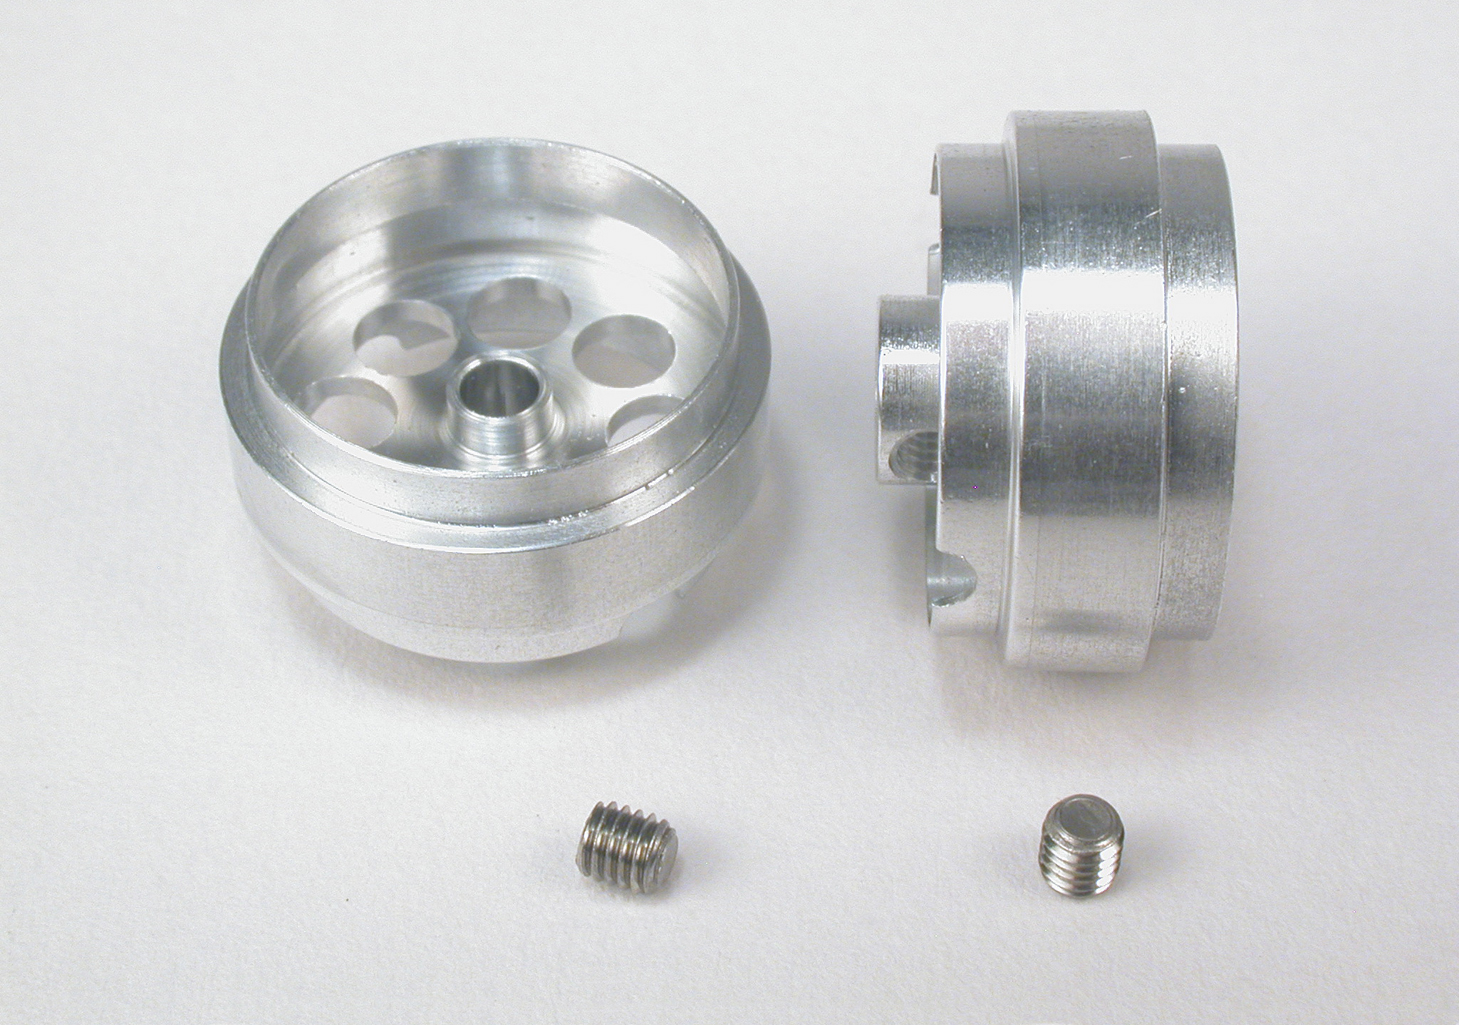 SC-4029 “Profile“ Design Wheel for 3mm. Axle. M3 screw